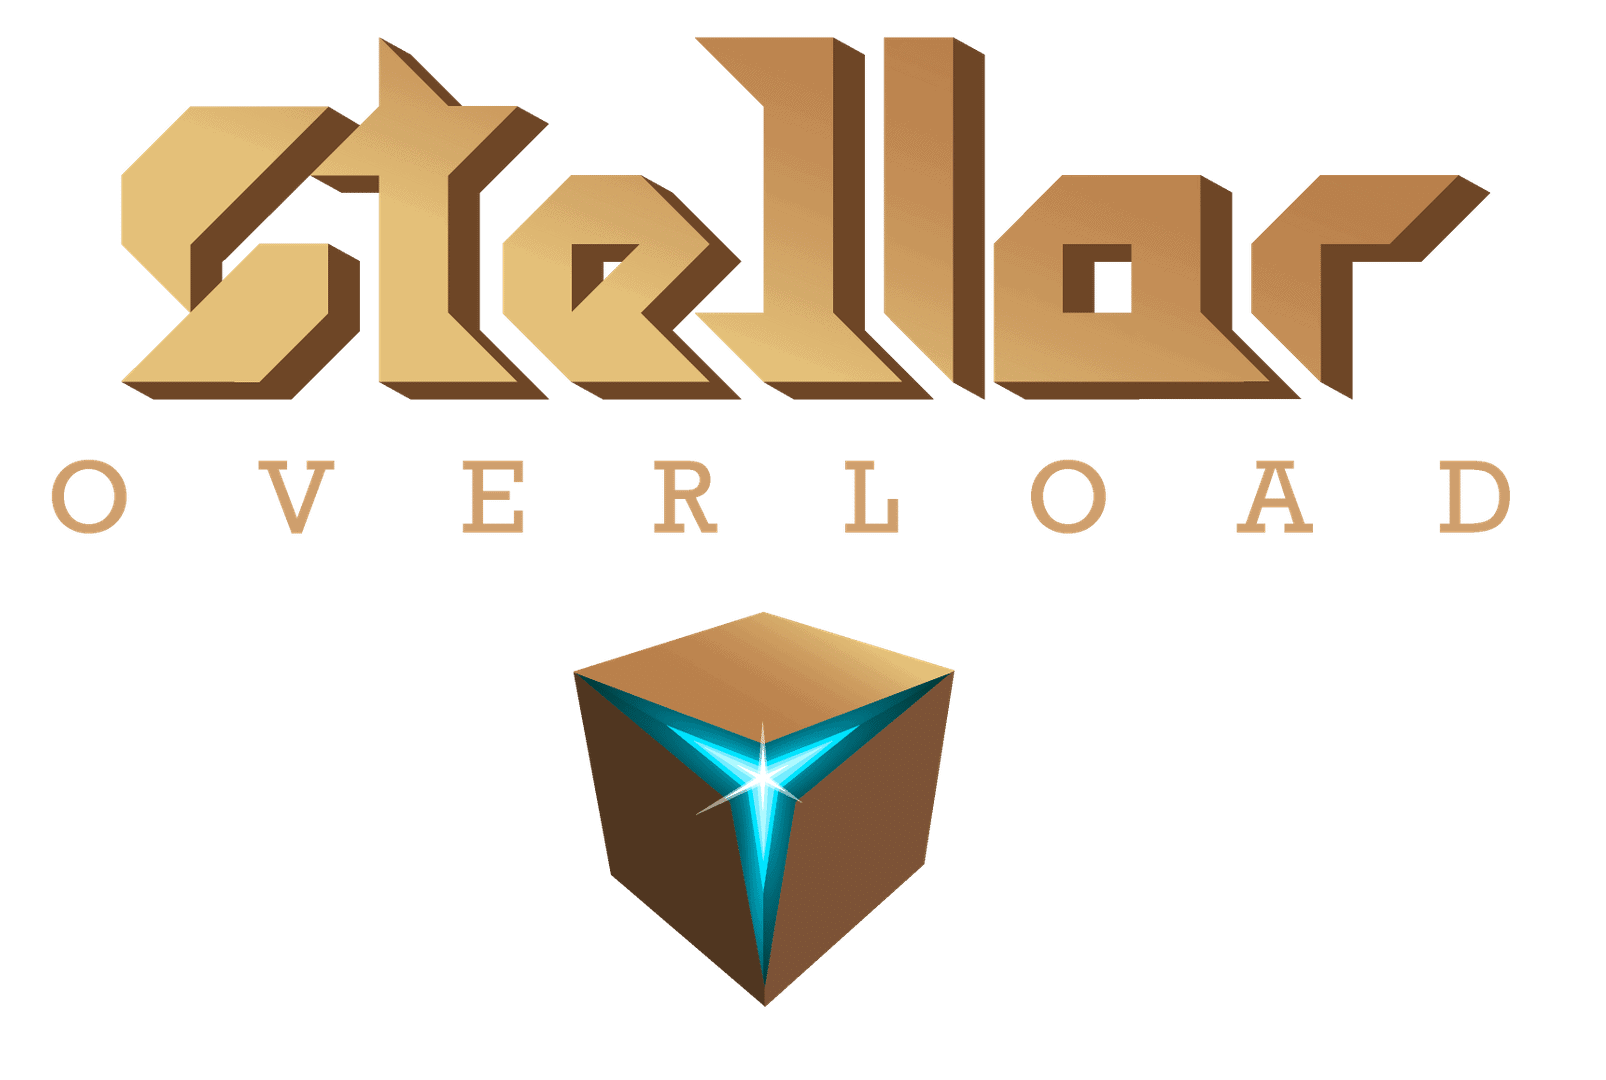 Stellar Overload